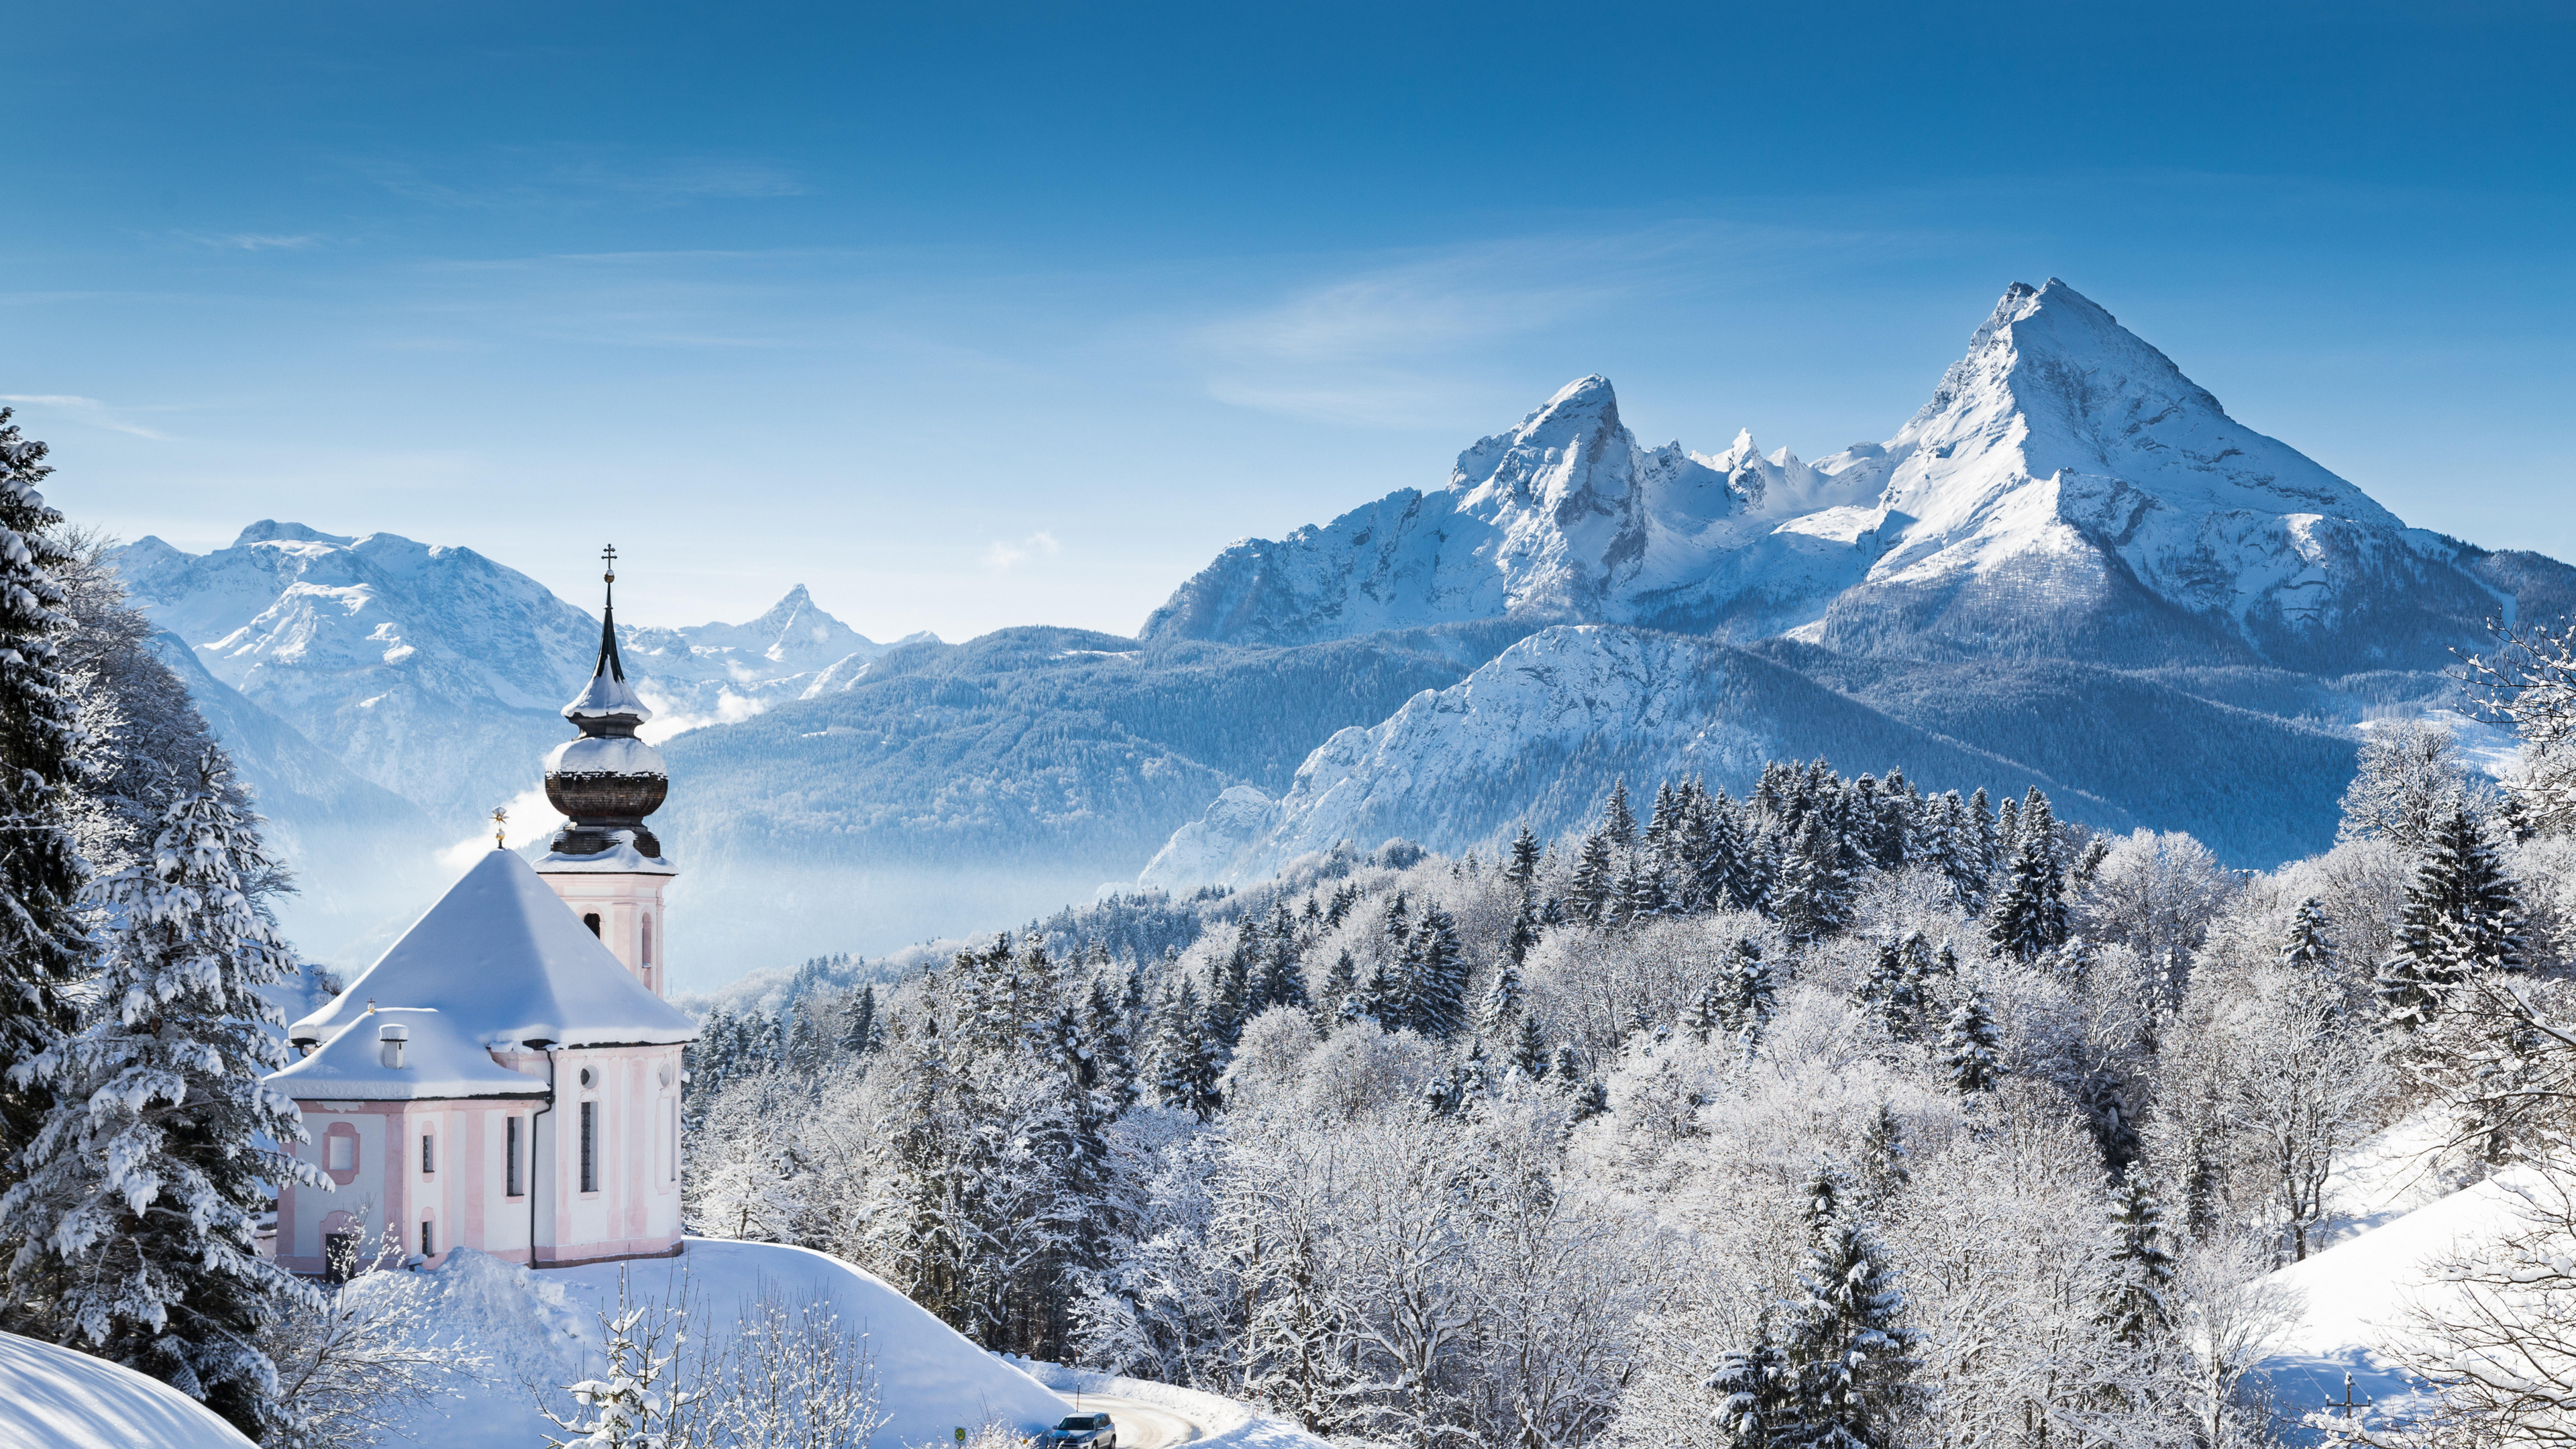 多山的地貌, 冬天, 山脉, 阿尔卑斯山, 安装的风景 壁纸 3840x2160 允许